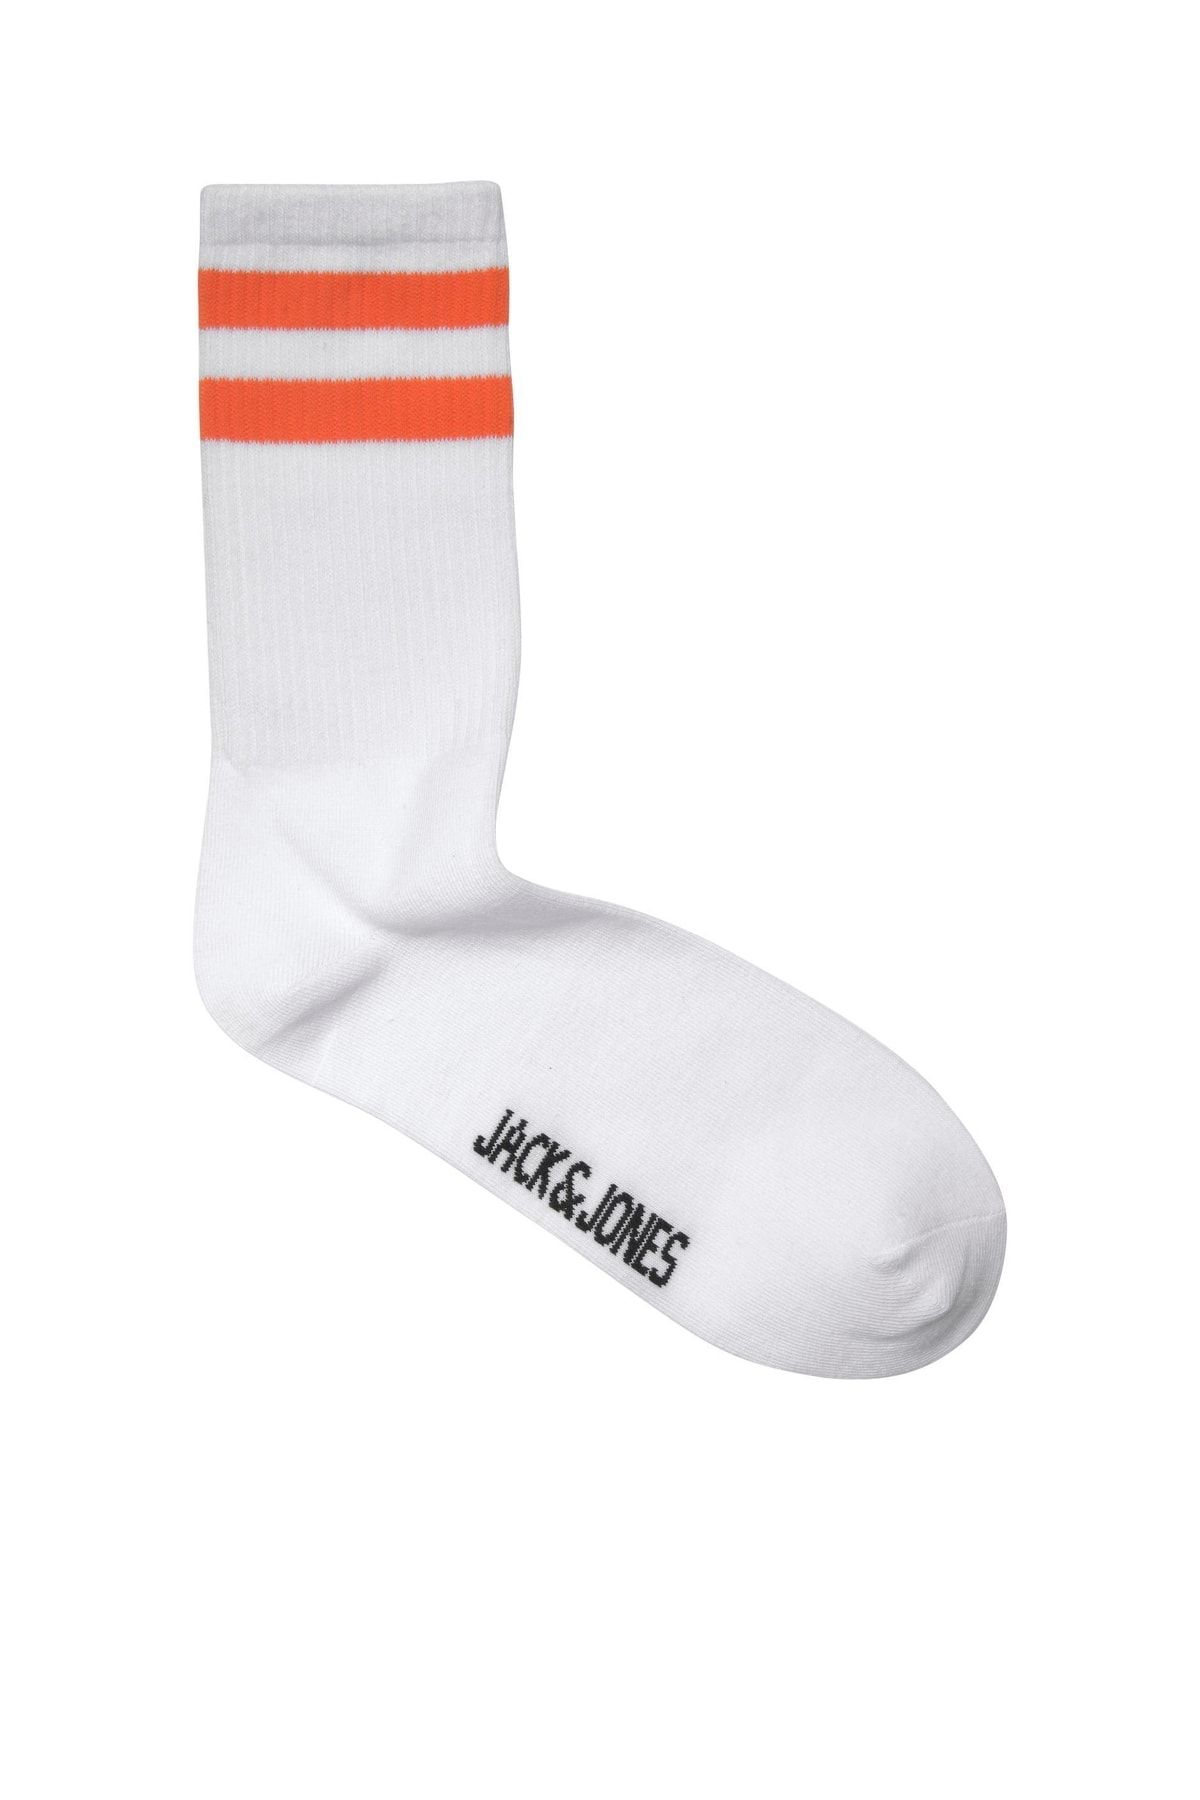 Jack & Jones Jack Jones Fury Tennis Sock Erkek Turuncu Çorap 12210540-23